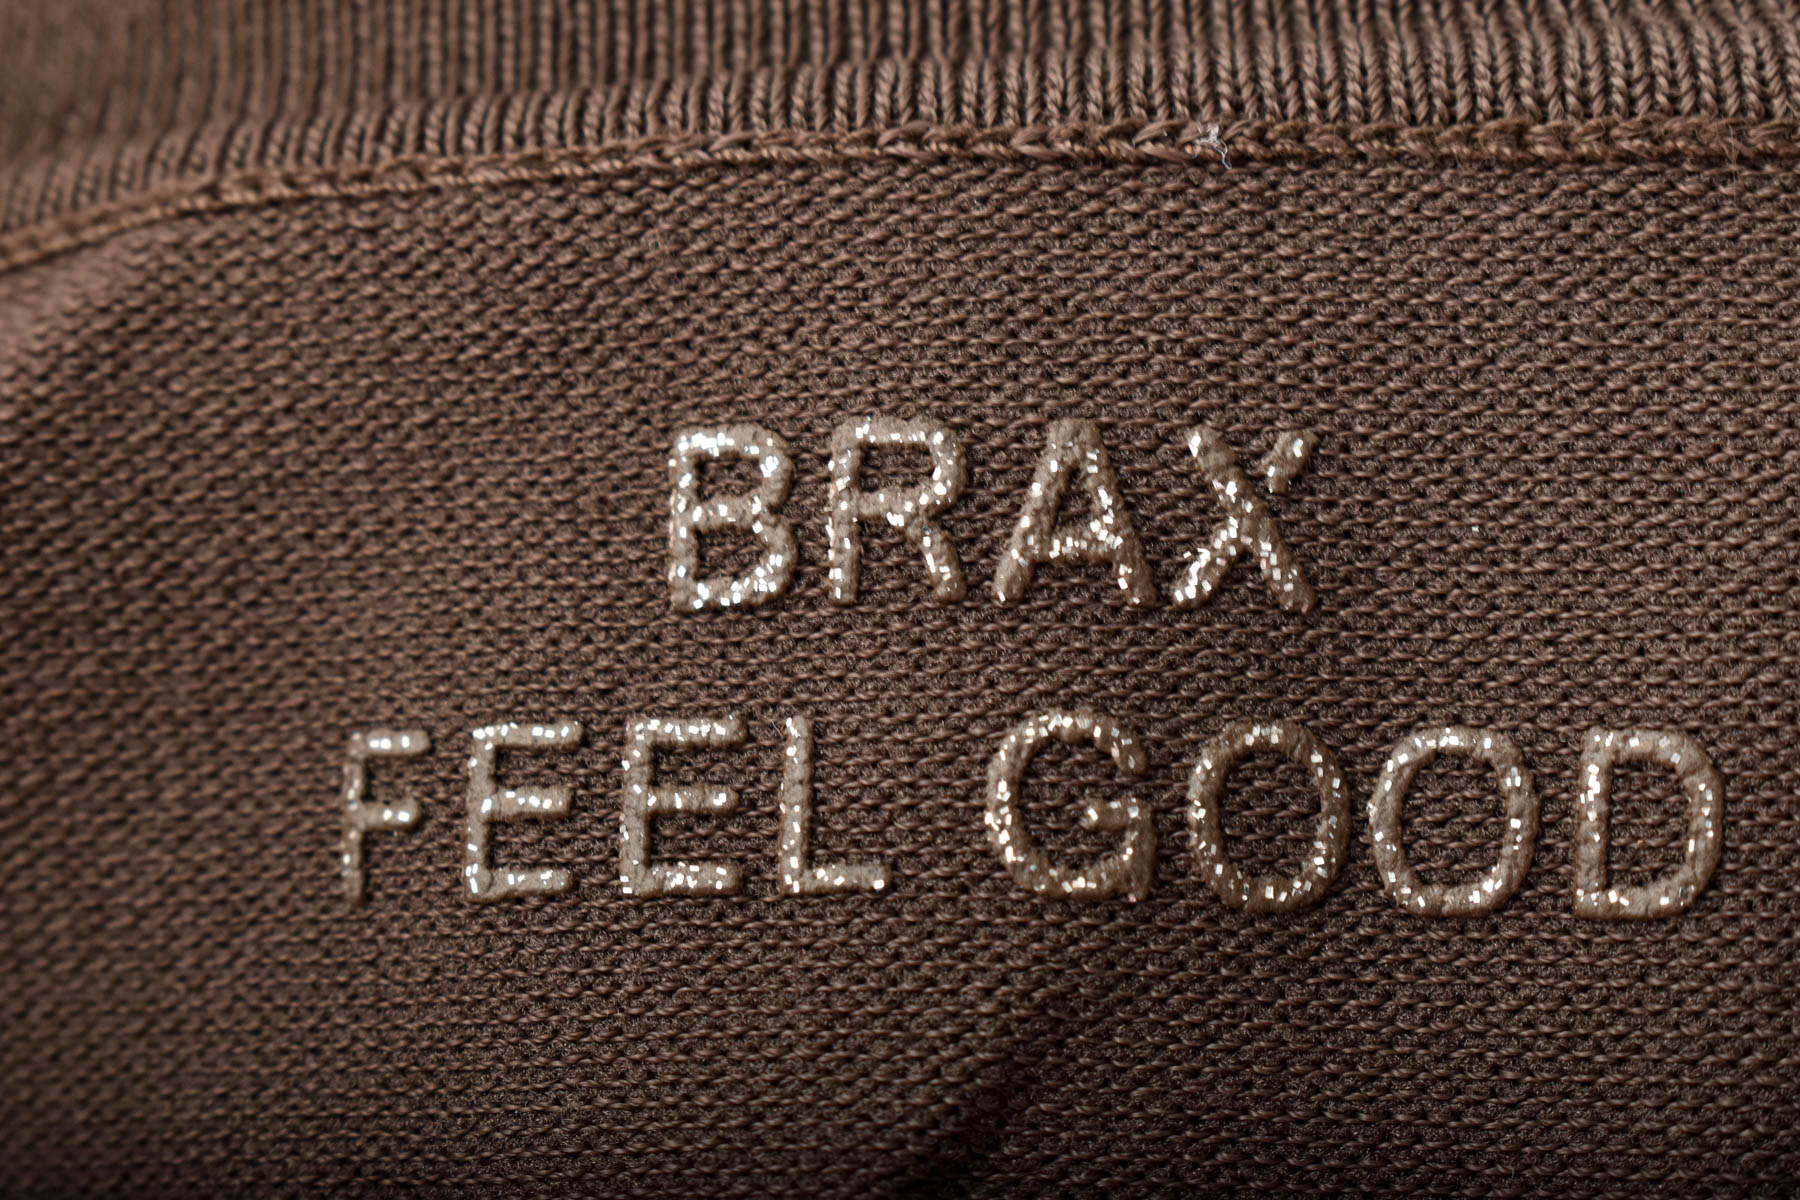 Дамска тениска - BRAX - 2